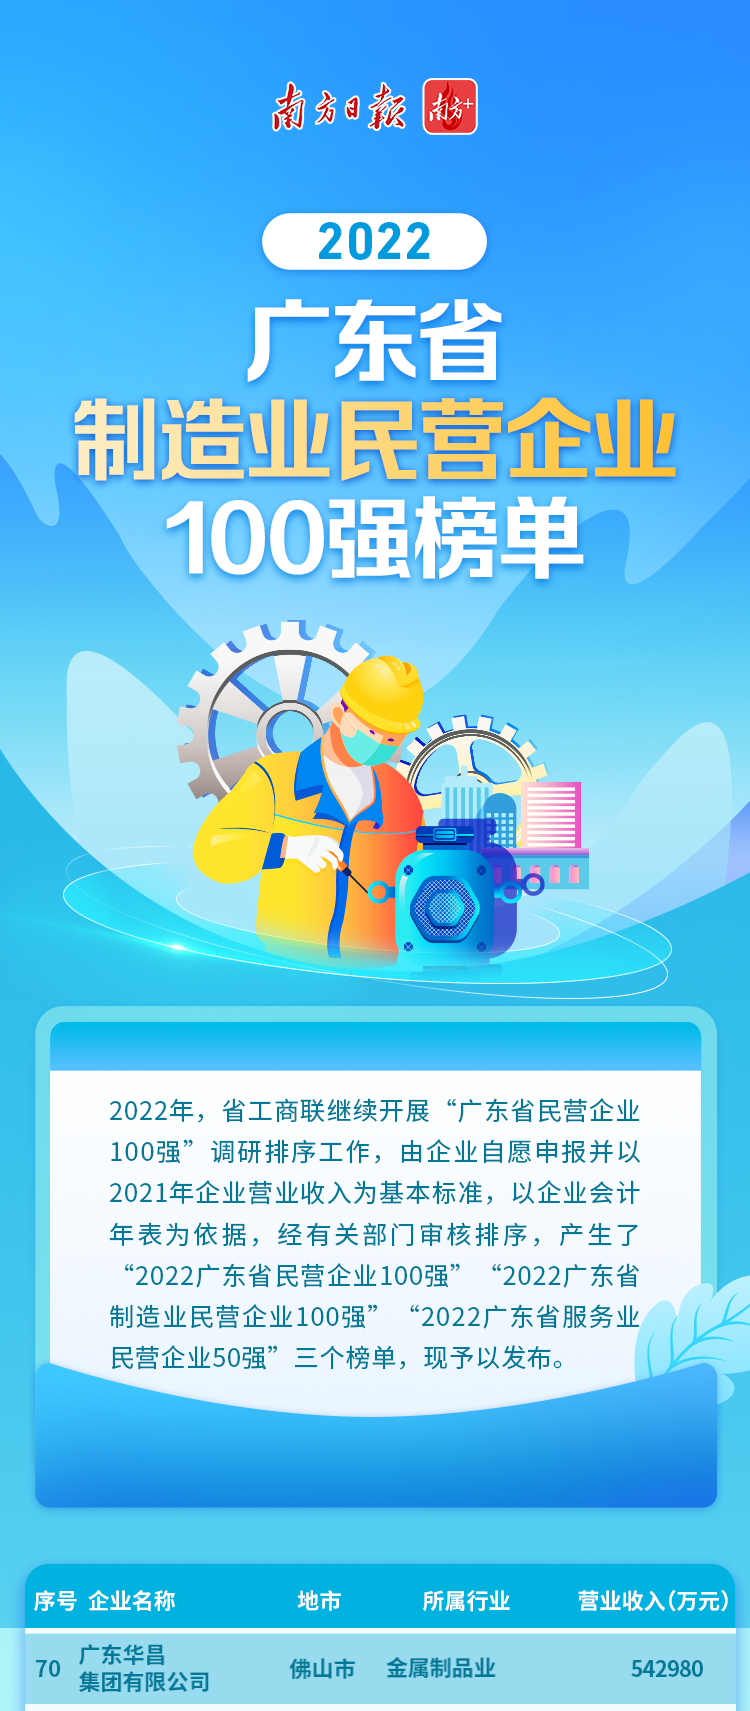 華昌集團榮列2022廣東省制造業民營企業100強第70位